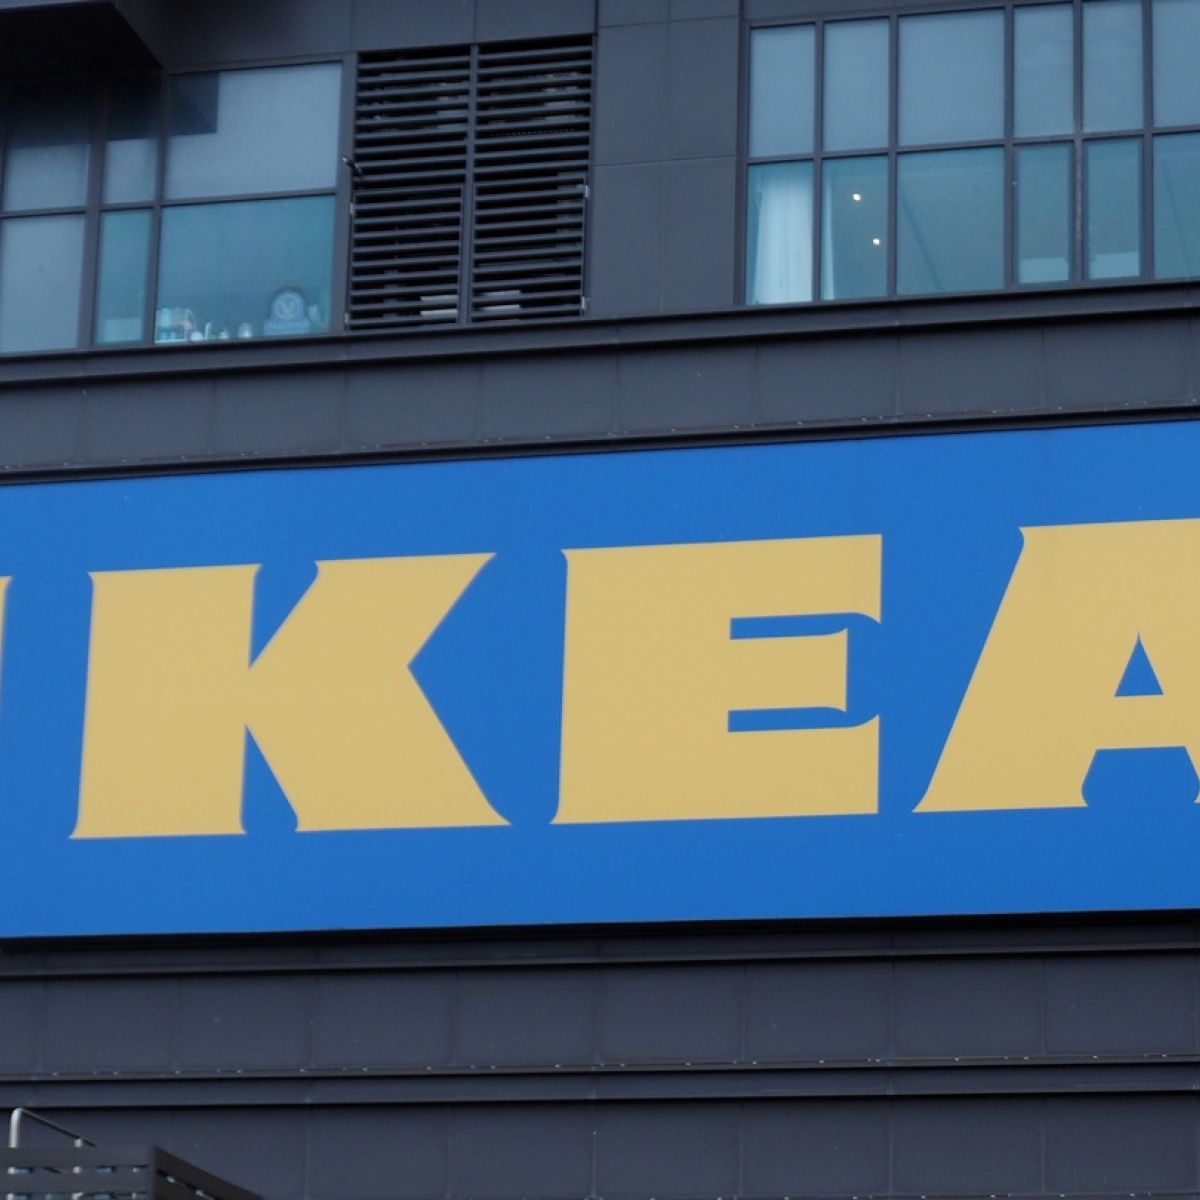 onderwerp Tweet vooroordeel Ikea seeks to build a new version of itself